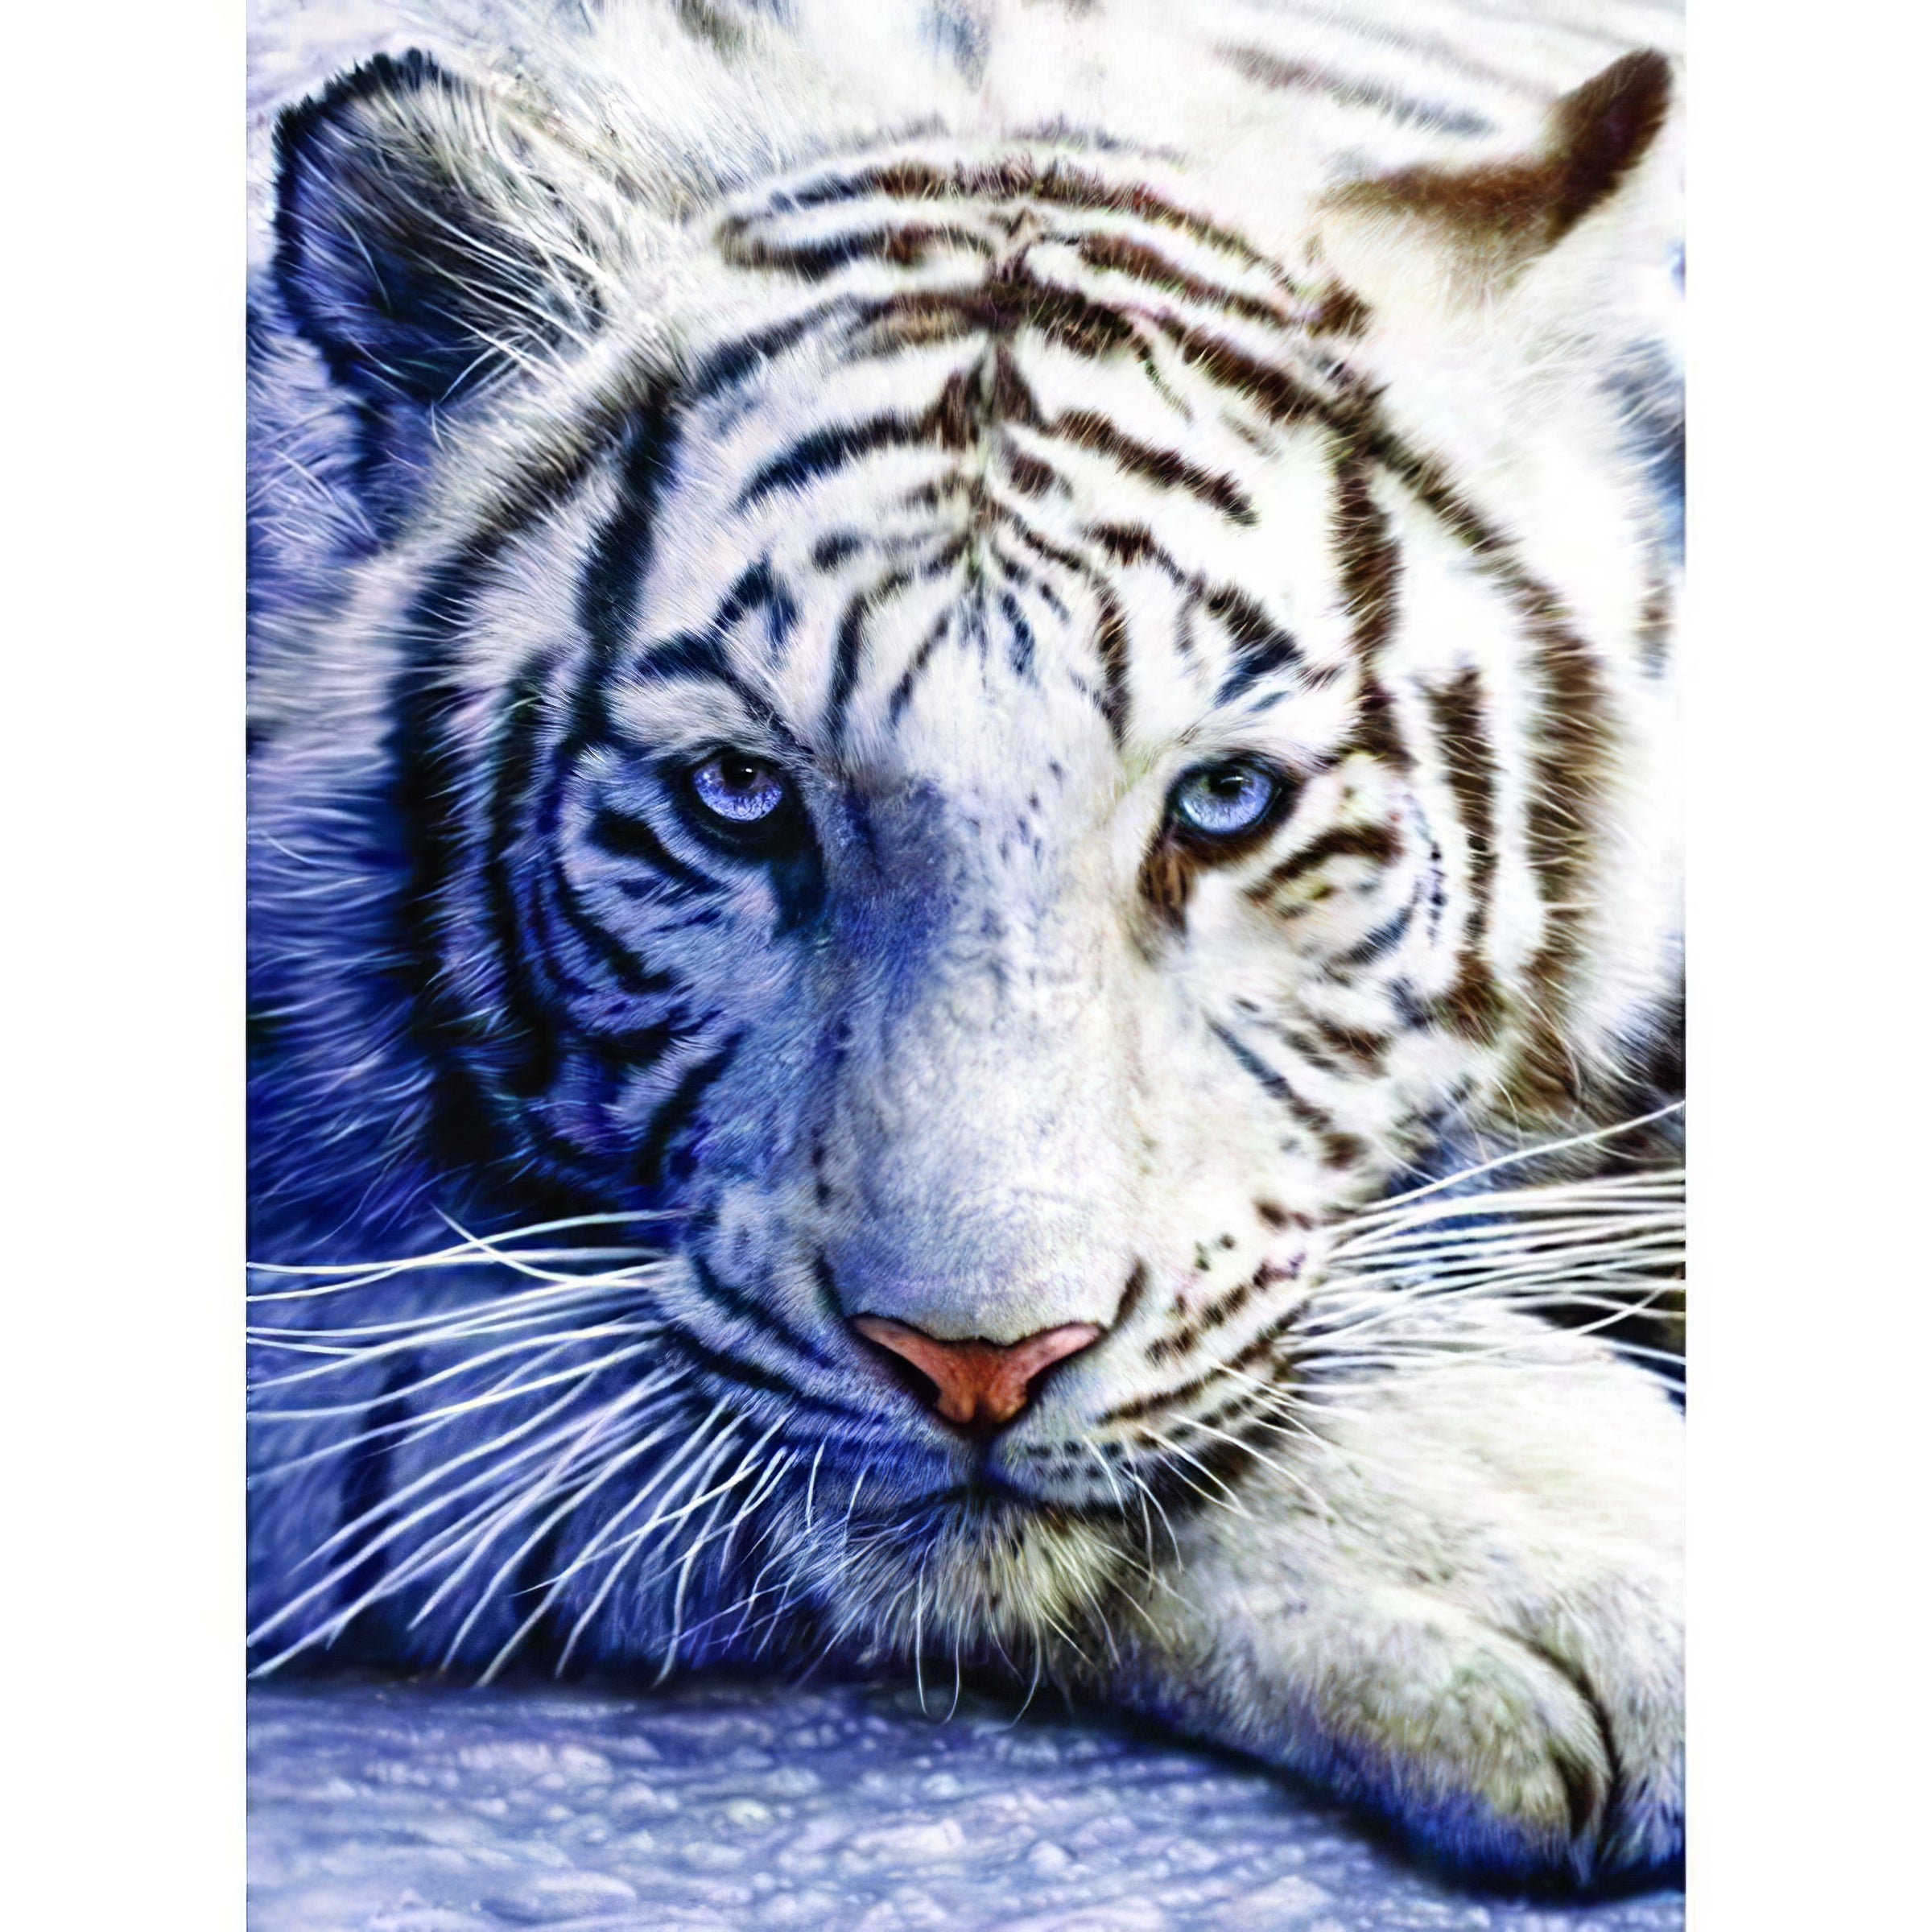 Una pintura de diamantes llamado 'Un tigre blanc' - Meencantalapinturadediamantes